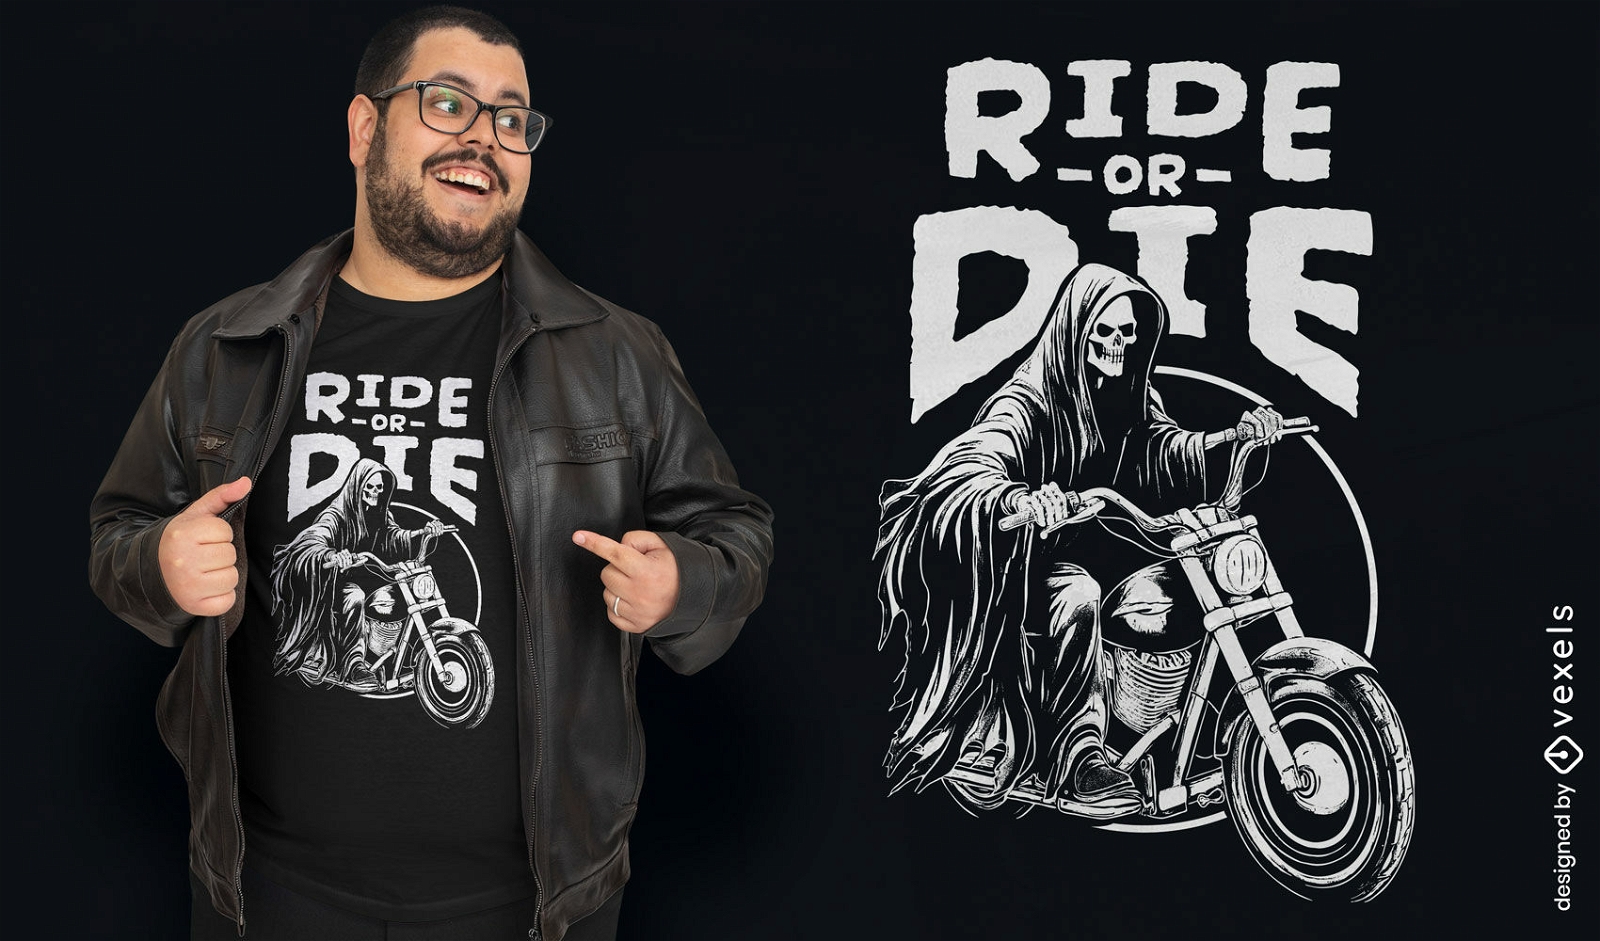 Ride or die reaper t-shirt design